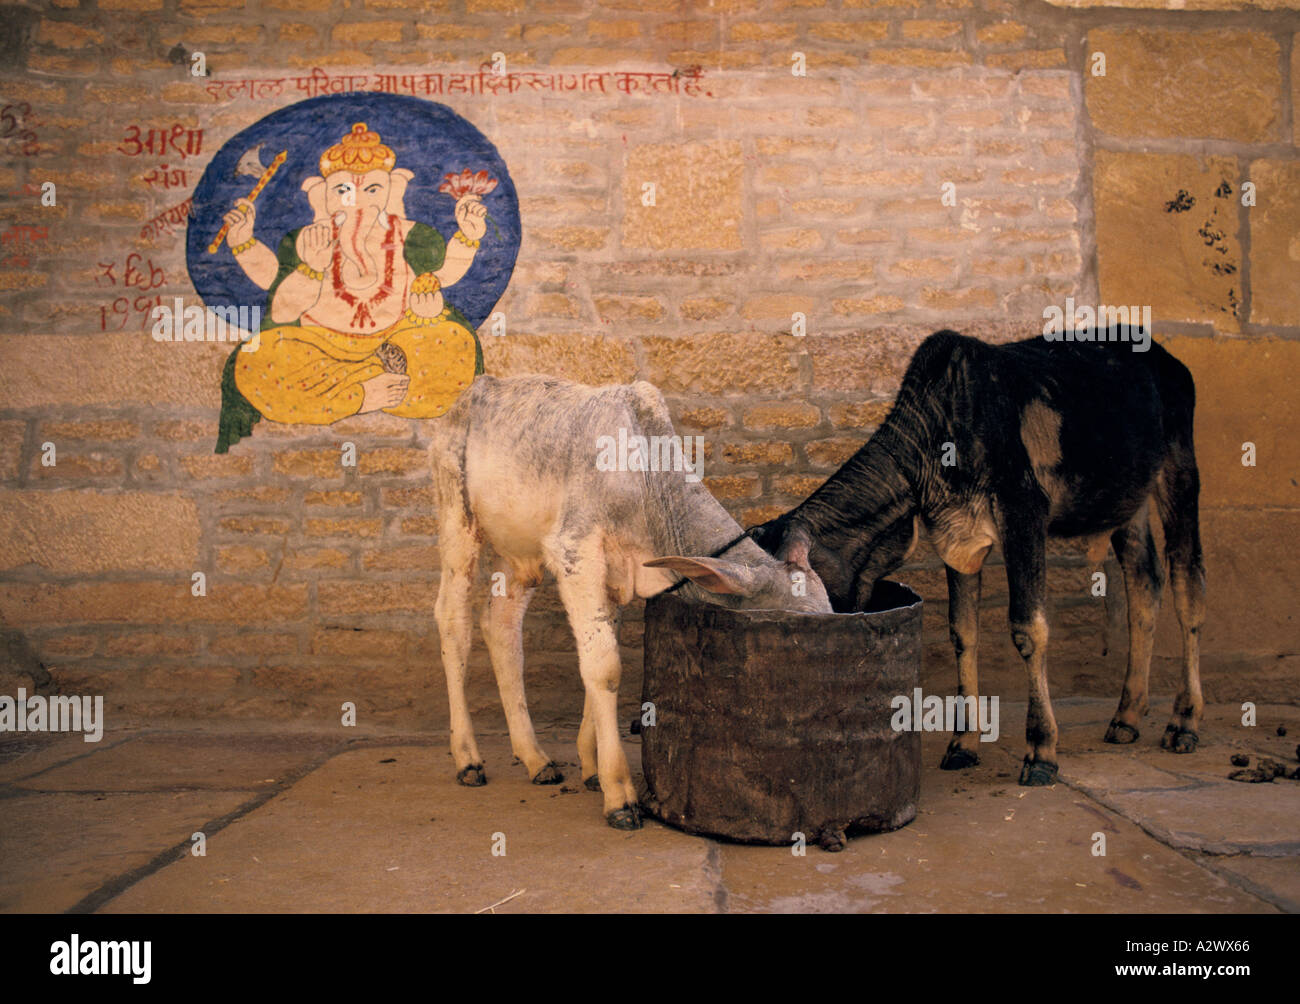 Due delle vacche sacre alimentare accanto a un muro con un dipinto di Ganesh, l'elefante dio. Rajasthan, India Foto Stock